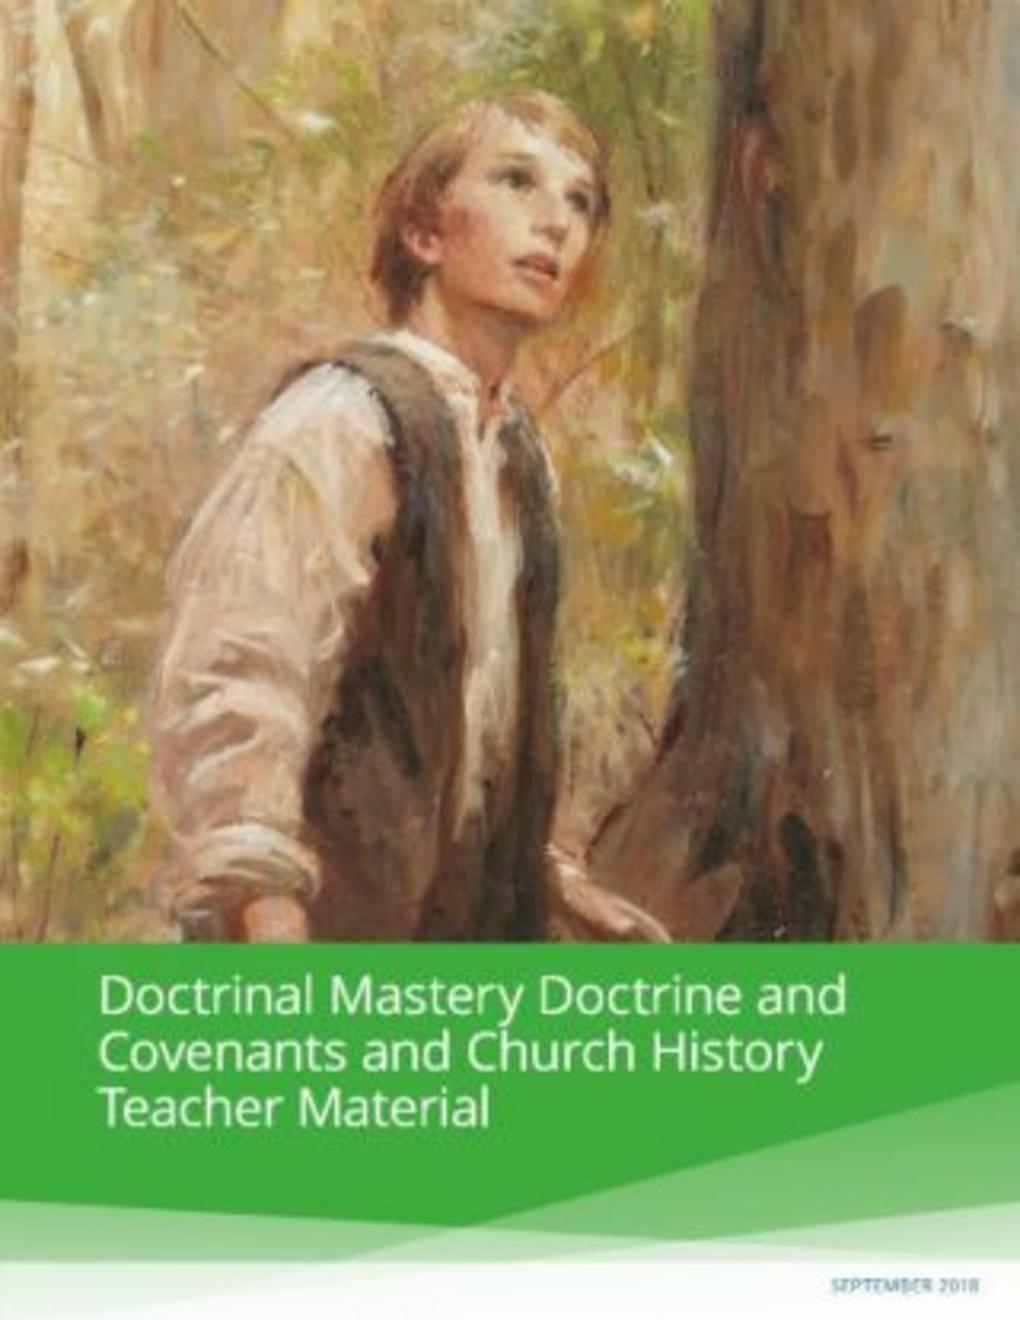 Опанування доктрини. Учення і Завіти та історія Церкви. Матеріал для вчителя